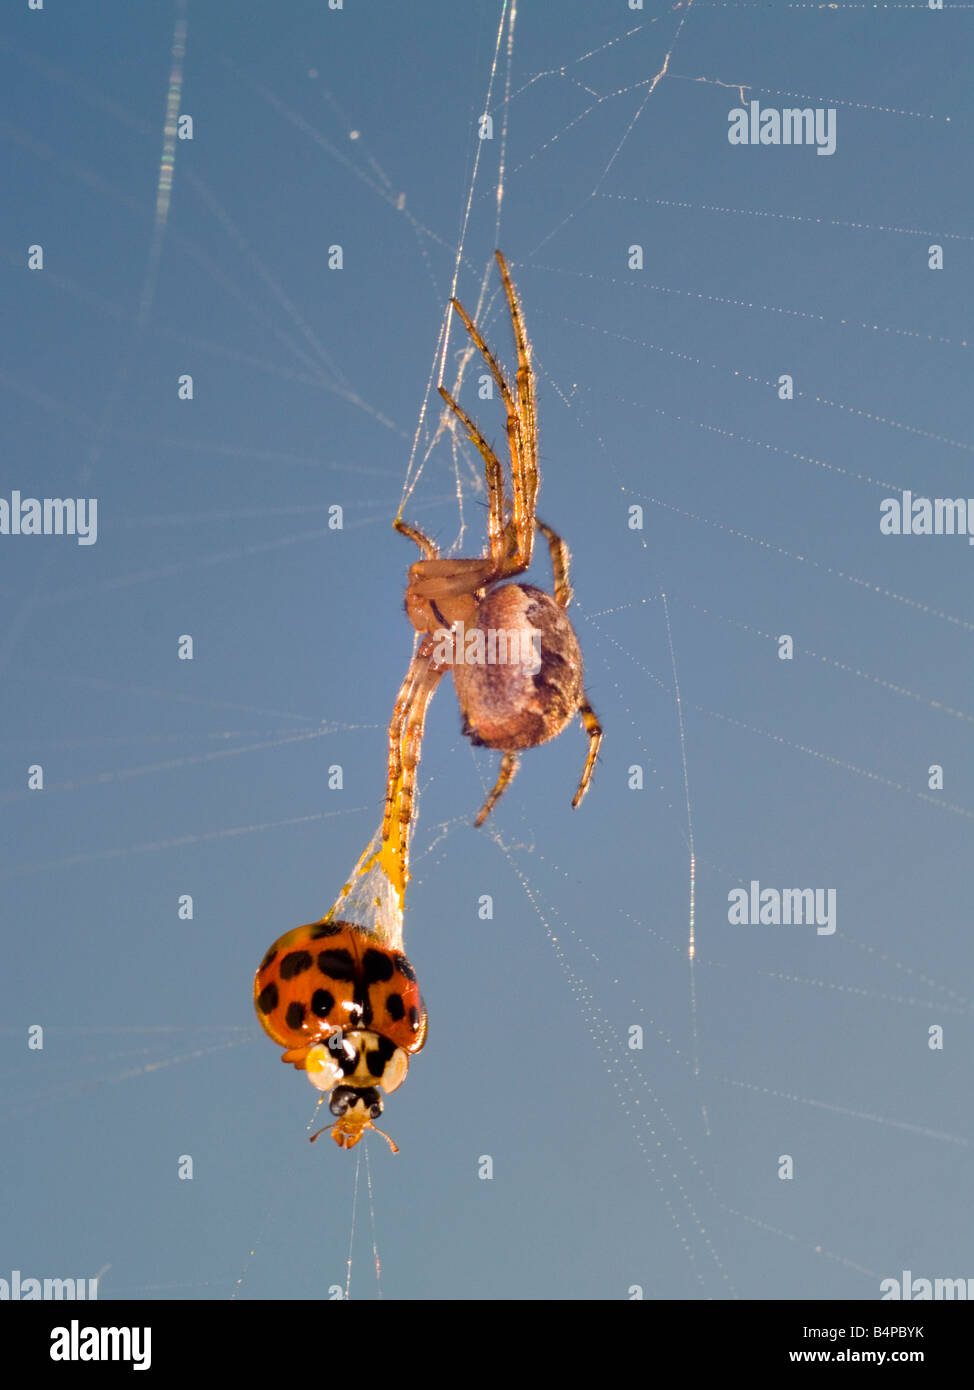 Gemeinsamen Gartenkreuzspinne Araneus Diadematus. Sie ziehen aus einer live Harlekin-Marienkäfer, Harmonia Axyridis mit einem Spritzer von klebrigen Web. Stockfoto